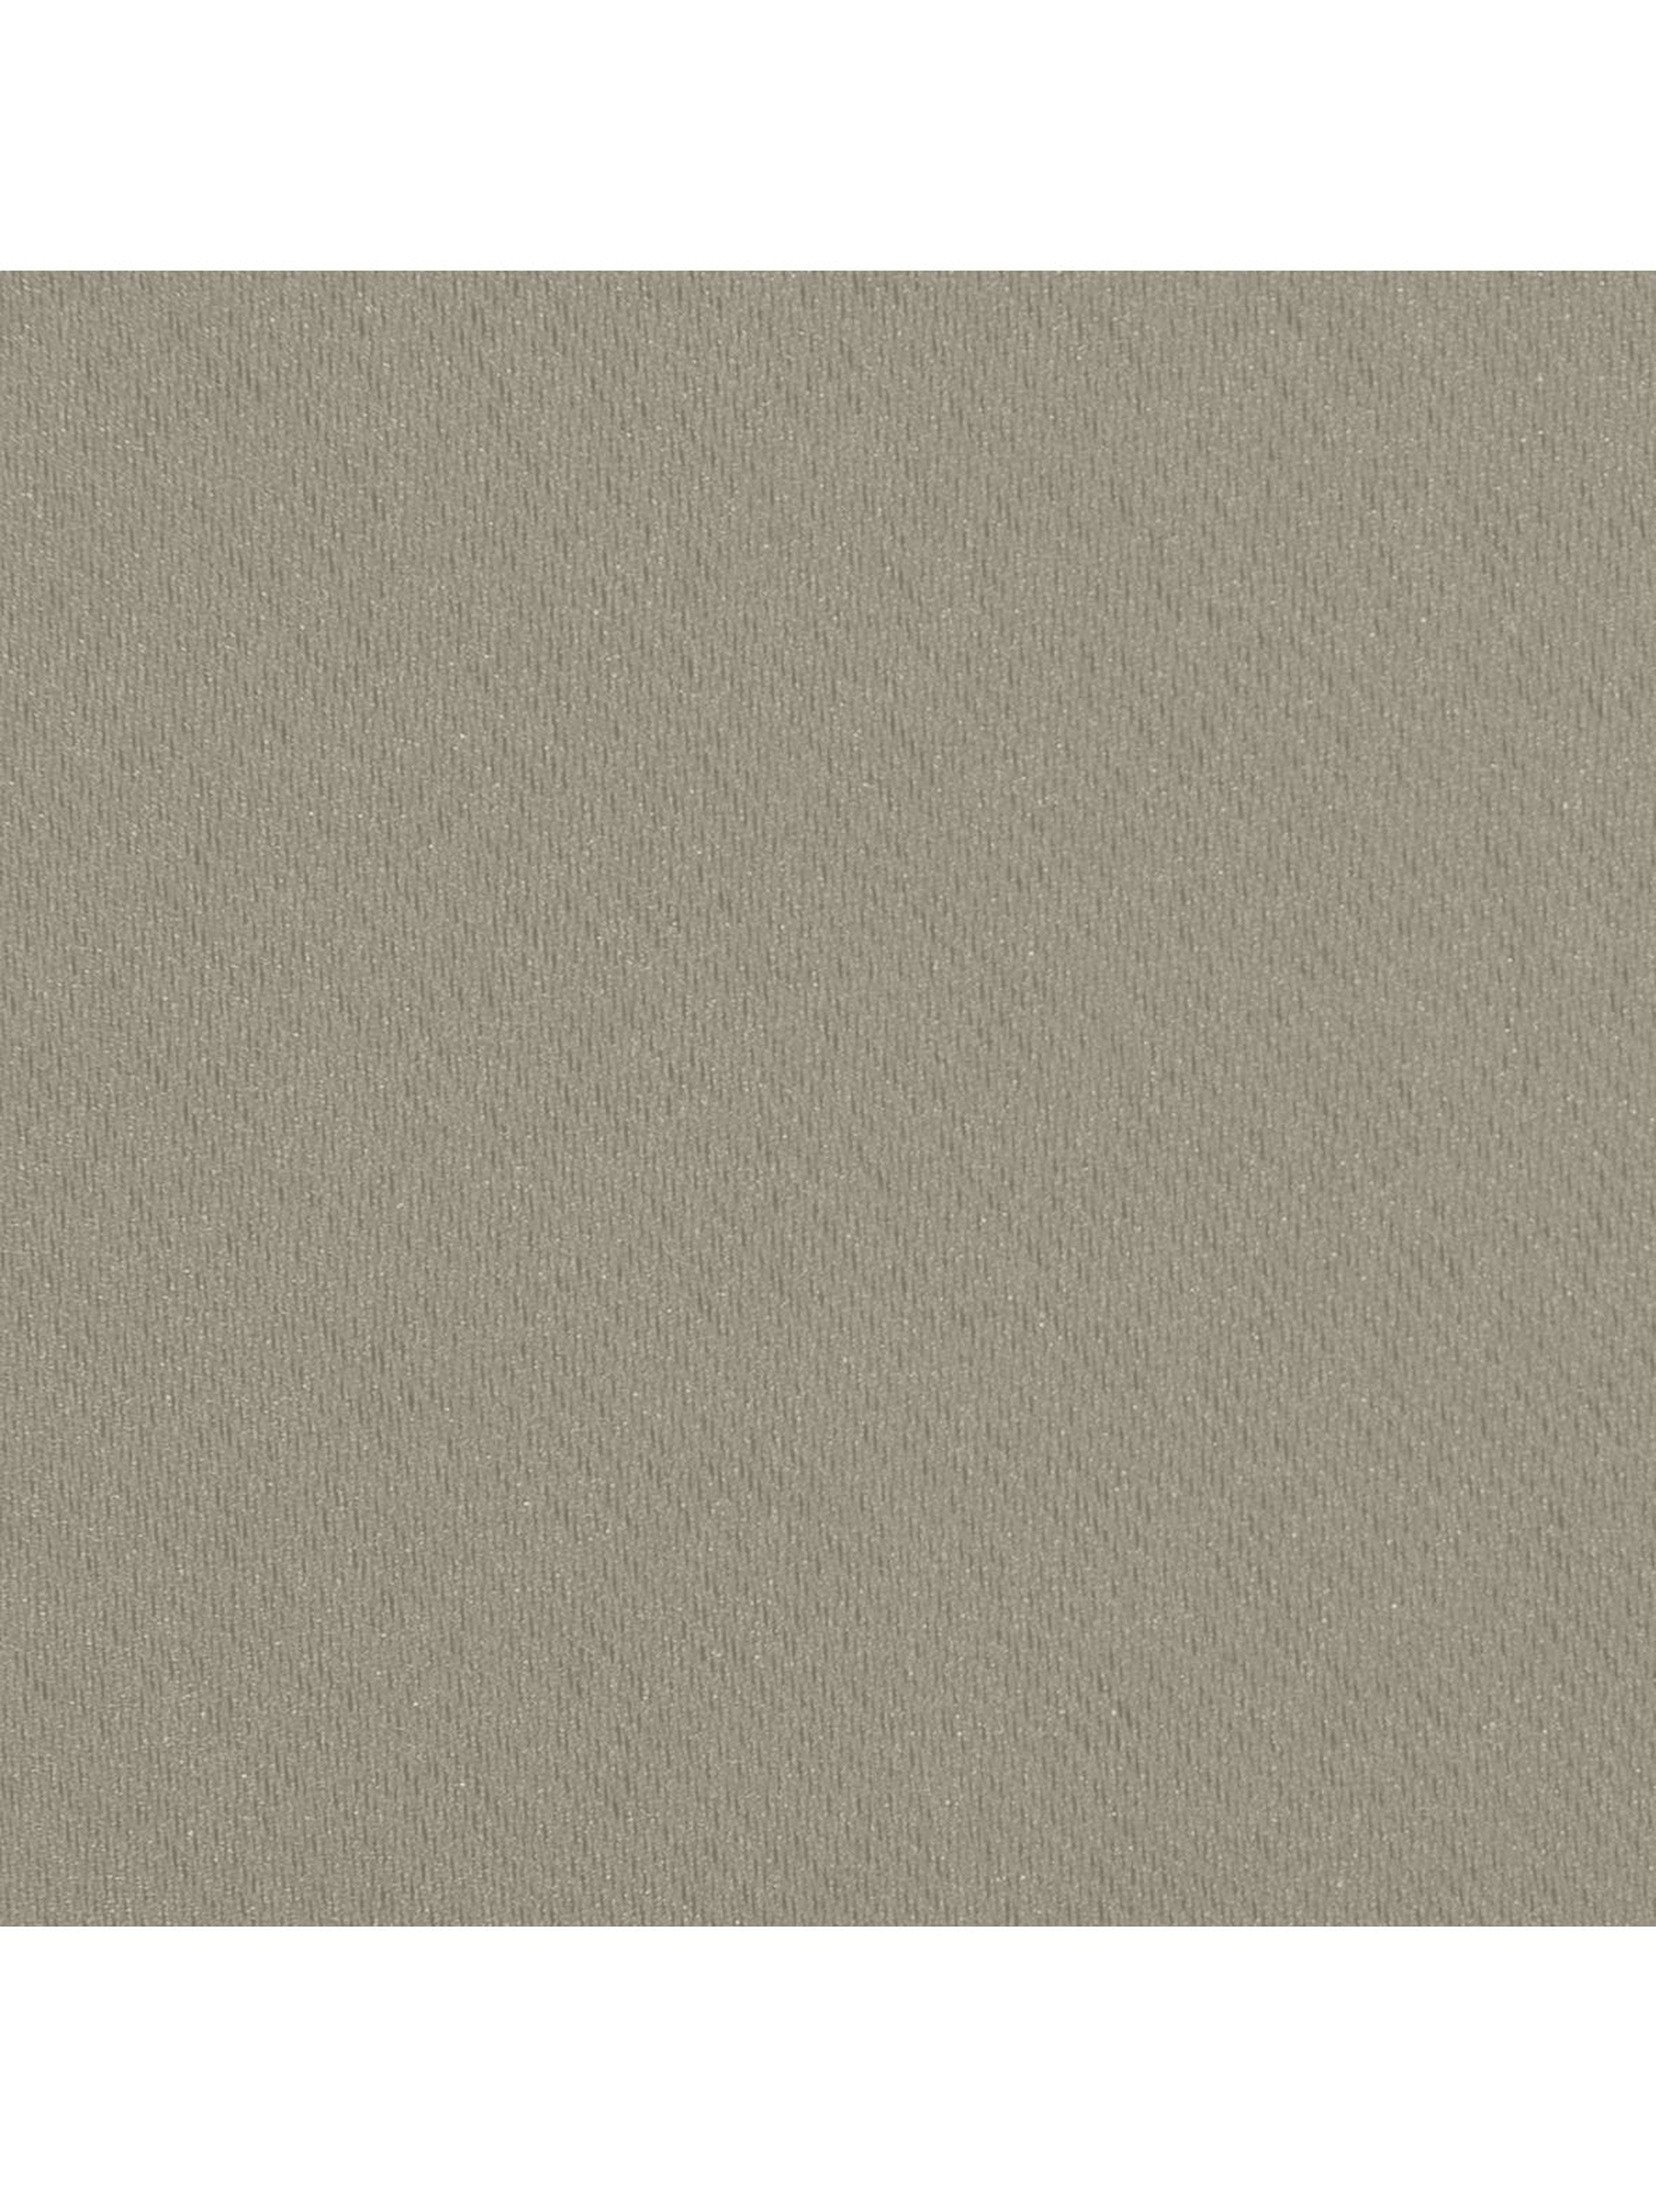 Zasłona jednokolorowa zaciemniająca- brązowa - 135x270cm